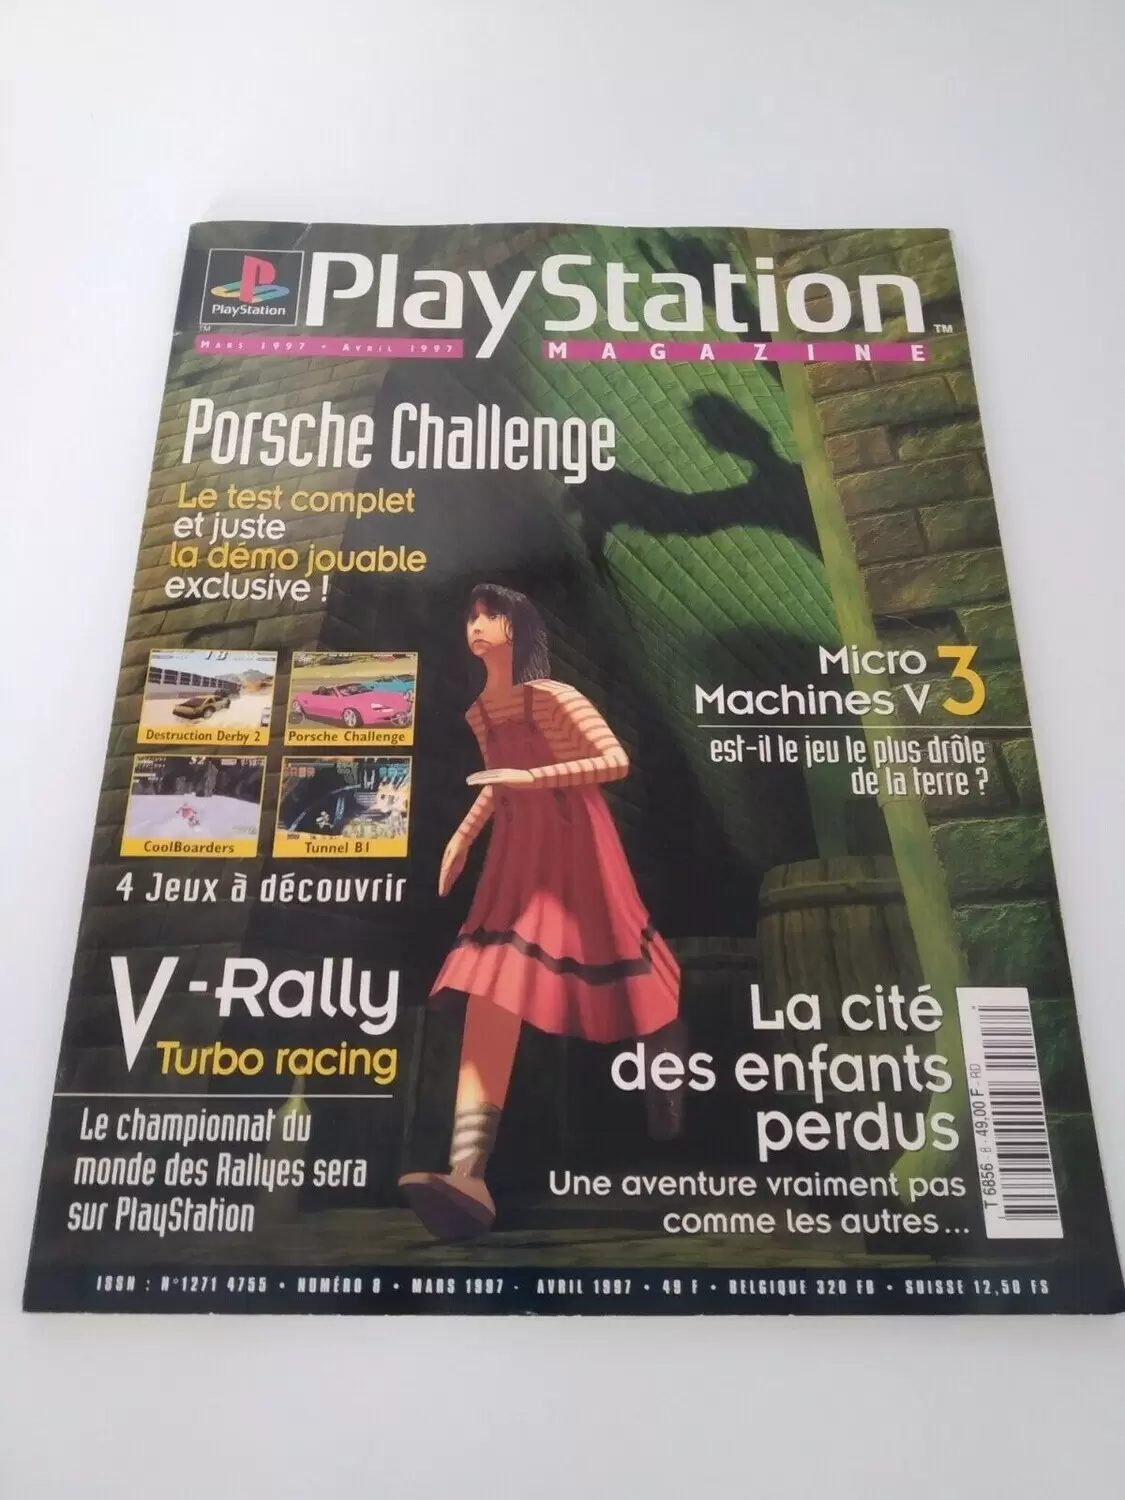 Playstation Magazine - Playstation Magazine #08